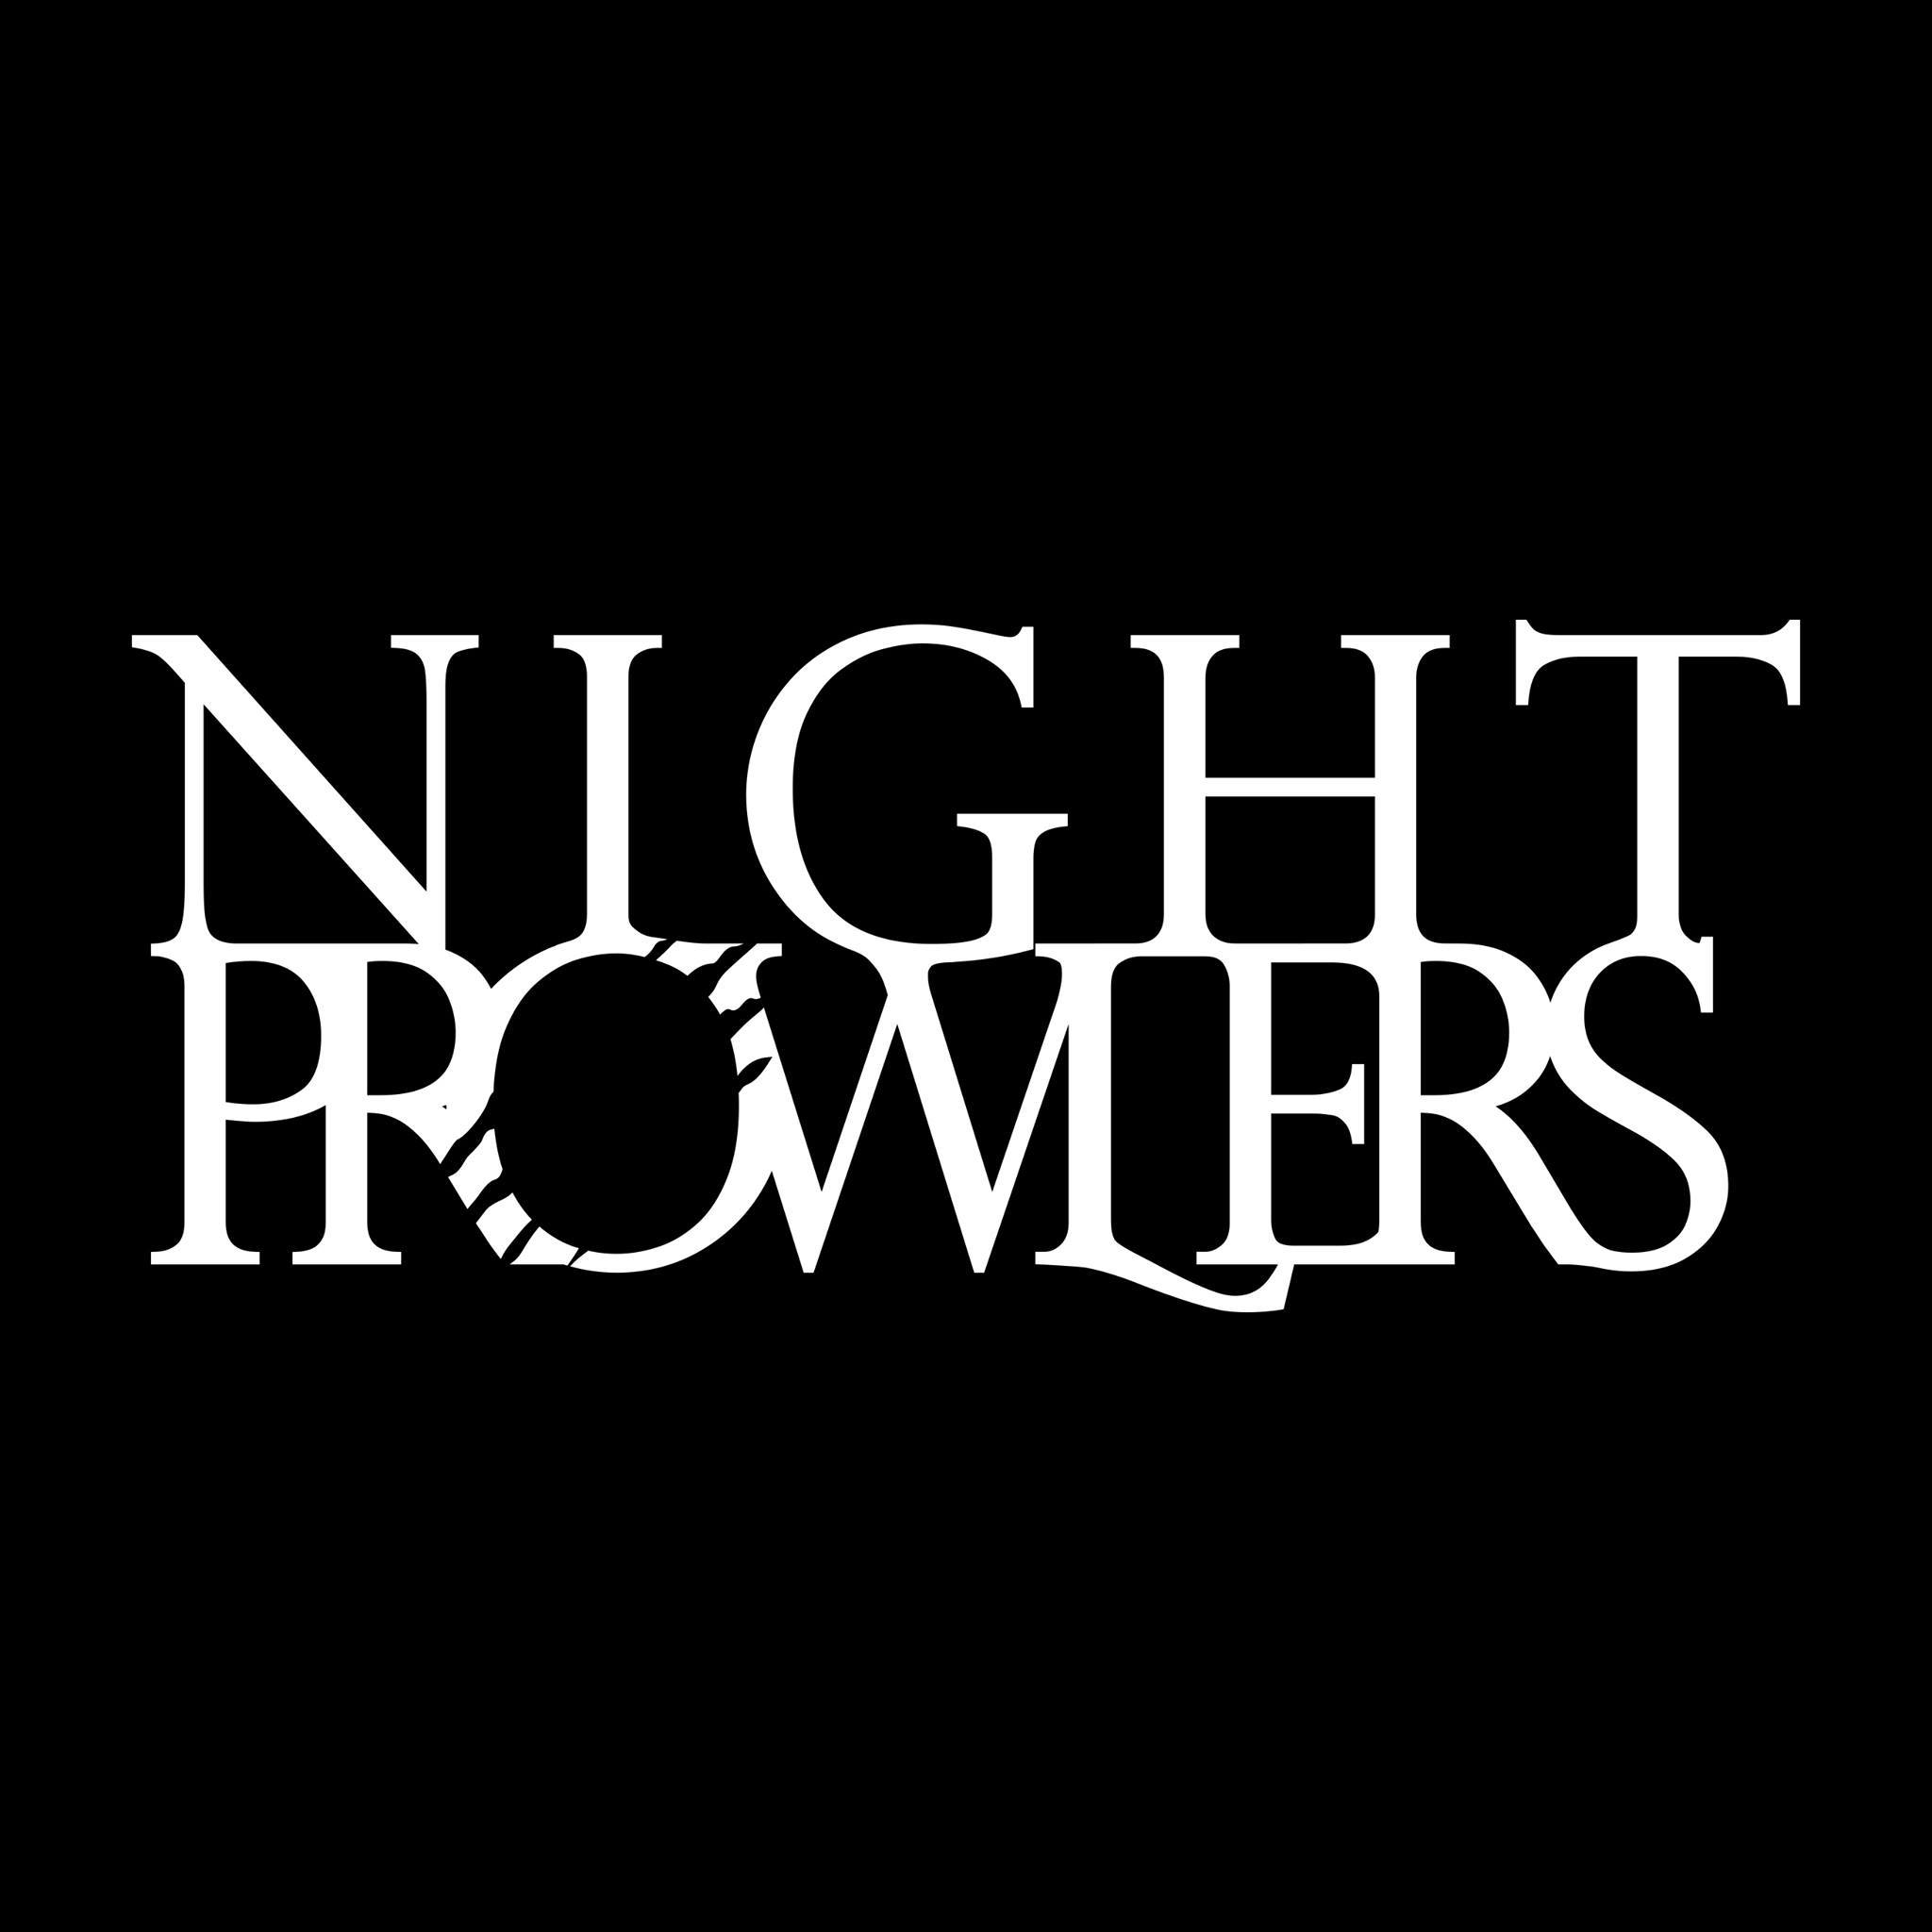 Night Prowlers